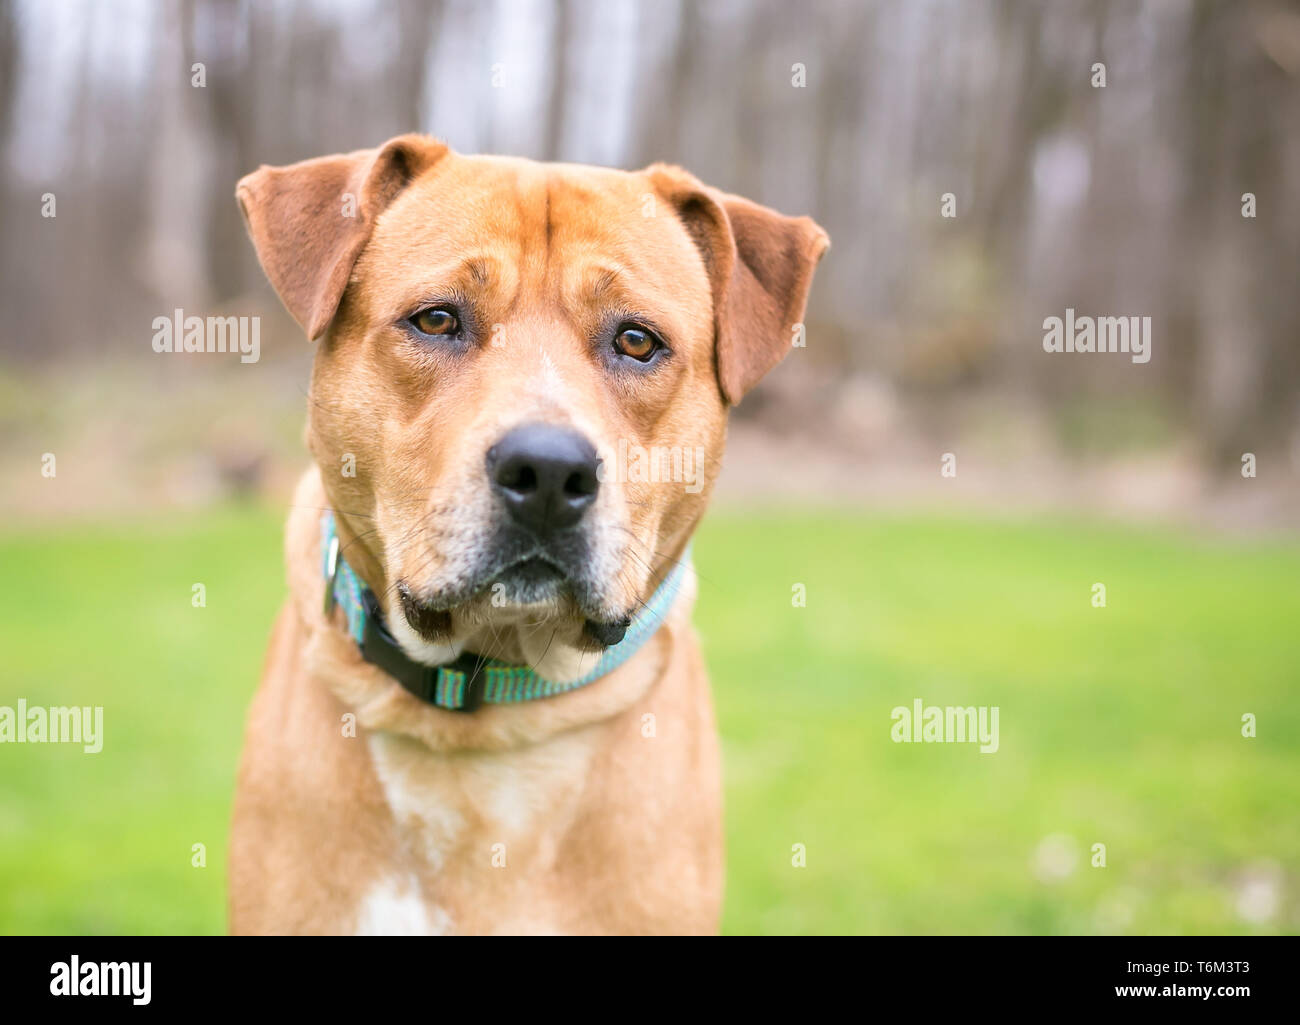 A Labrador Retriever mixed breed dog outdoors Stock Photo